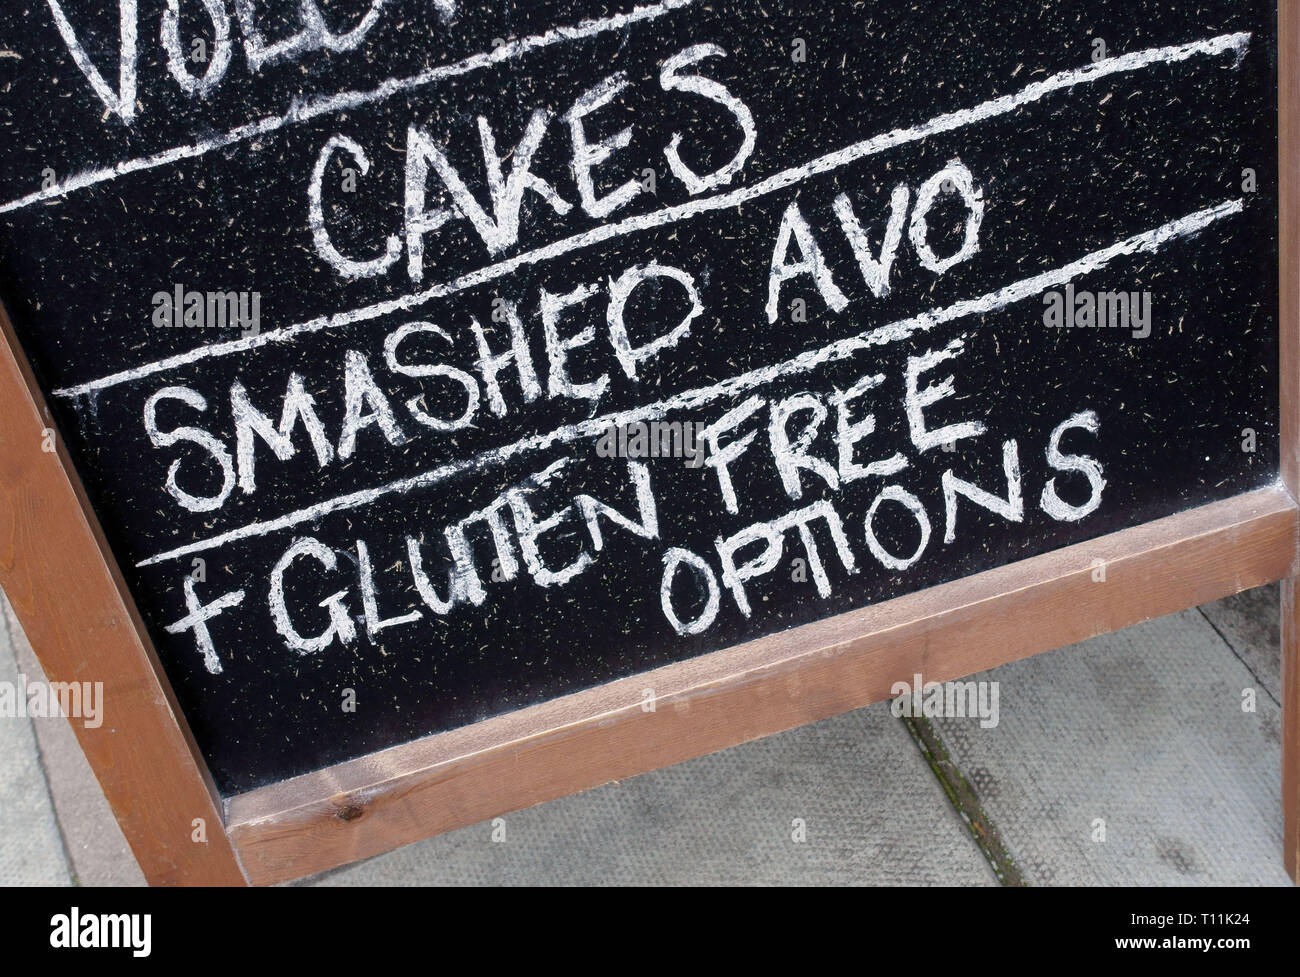 Purè di avocado e Cibo senza glutine pubblicizzato al di fuori del Sud London cafe Foto Stock